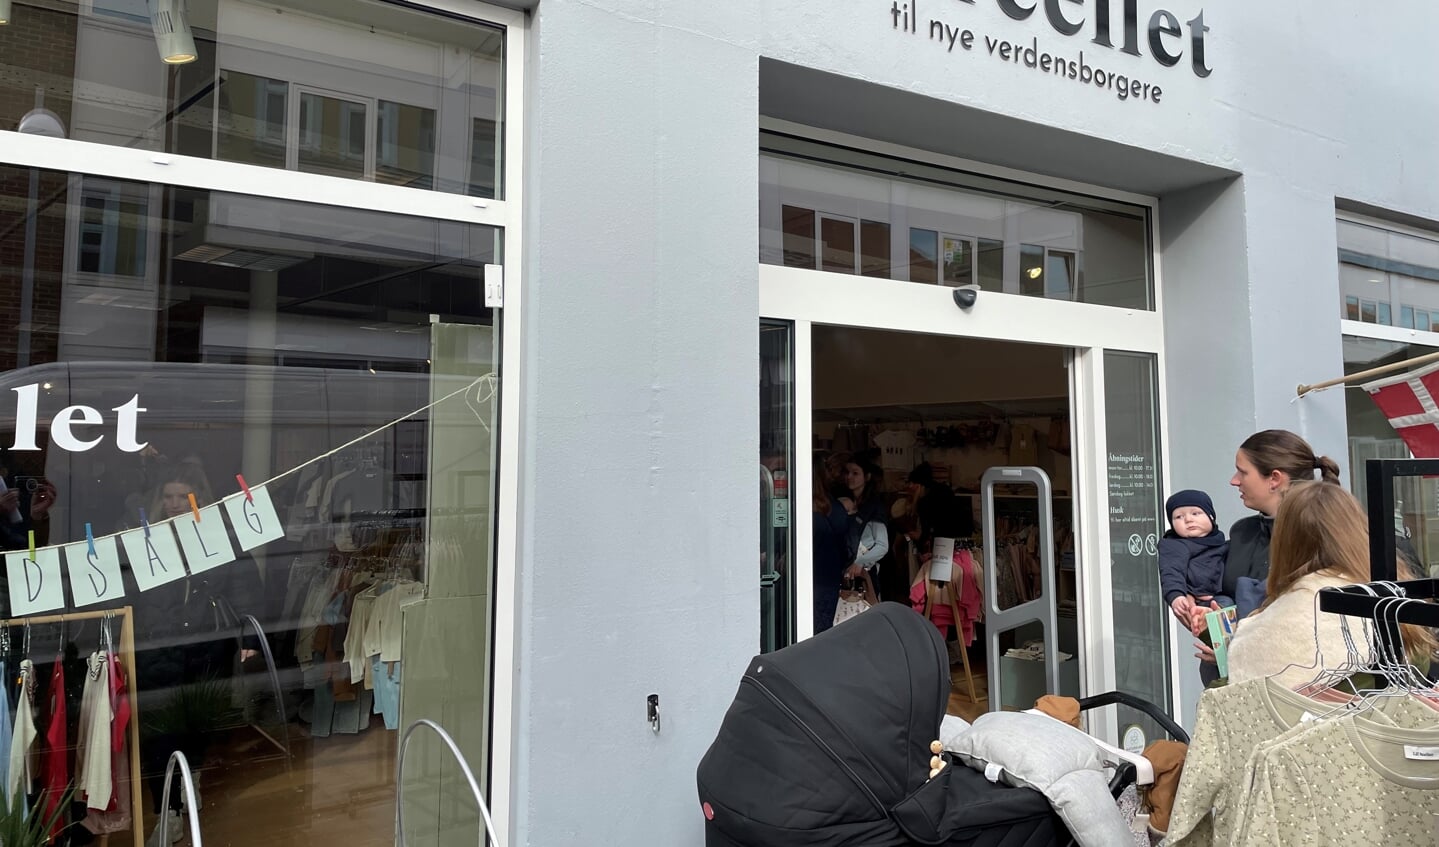 Senest har børnetøjsbutikken Parcellet på Perlegade meldt ud, at den lukker. Foto: